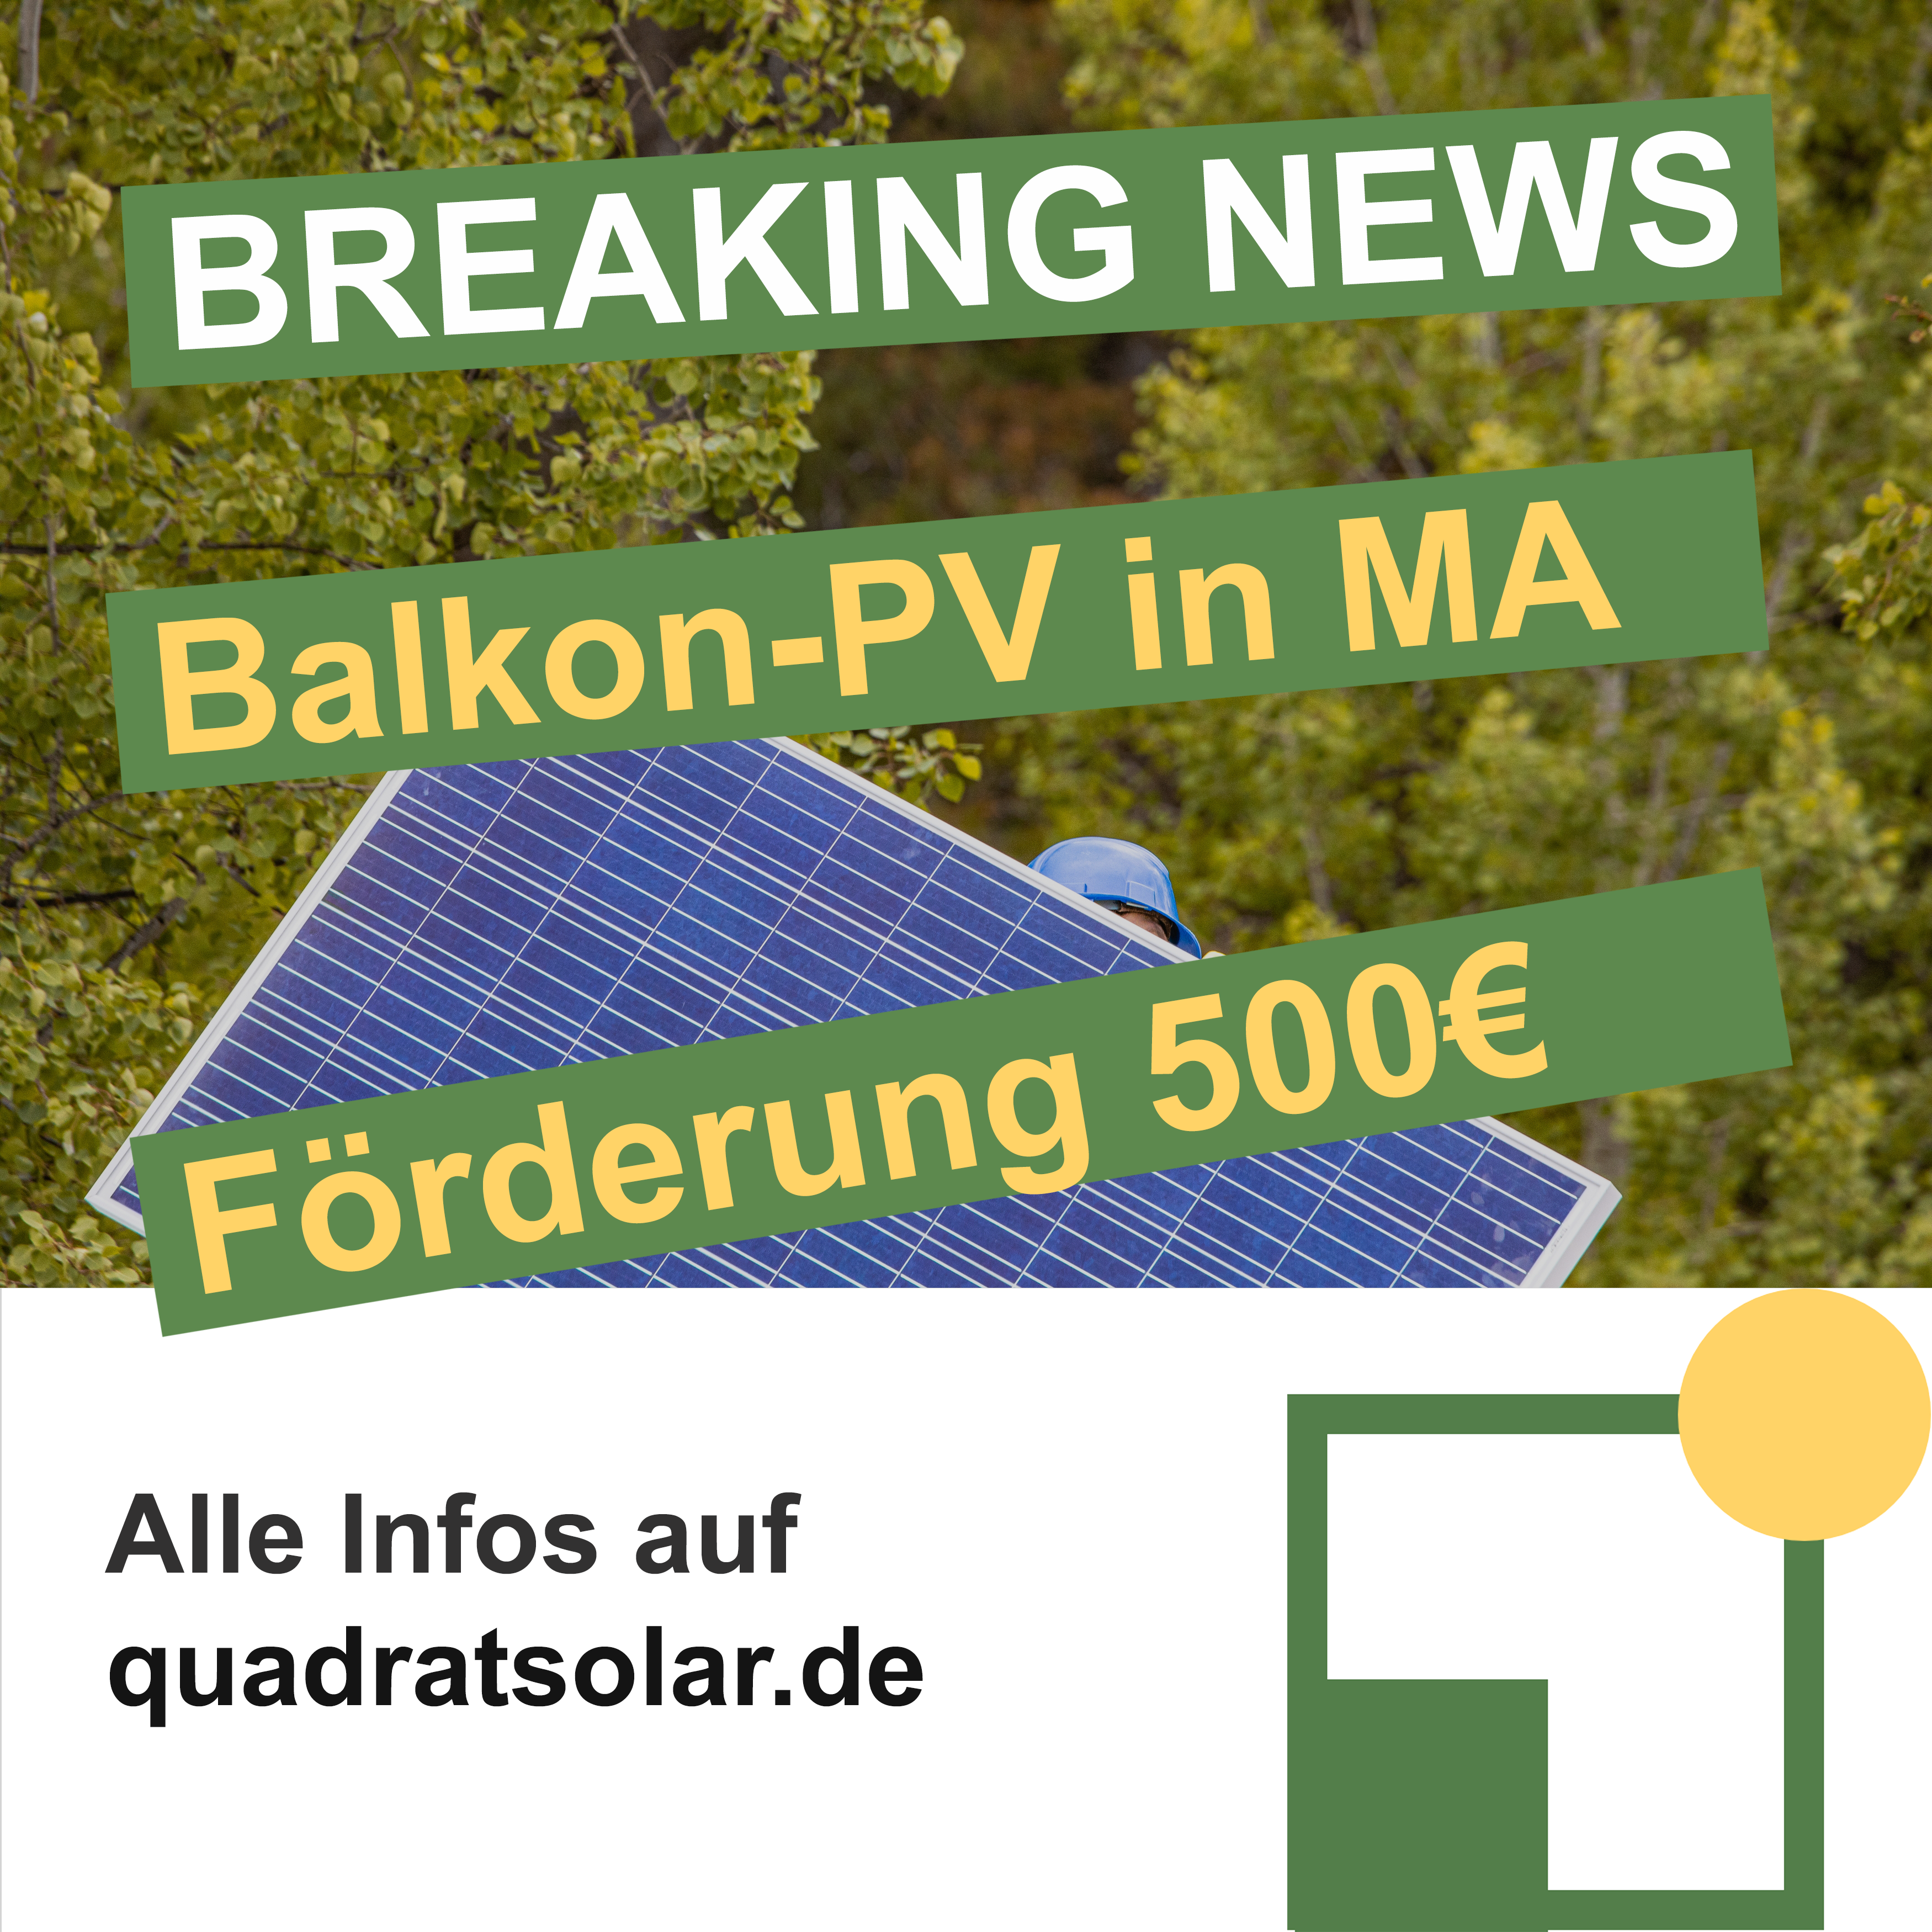 Förderung von BalkonSolar – jetzt auch in Mannheim